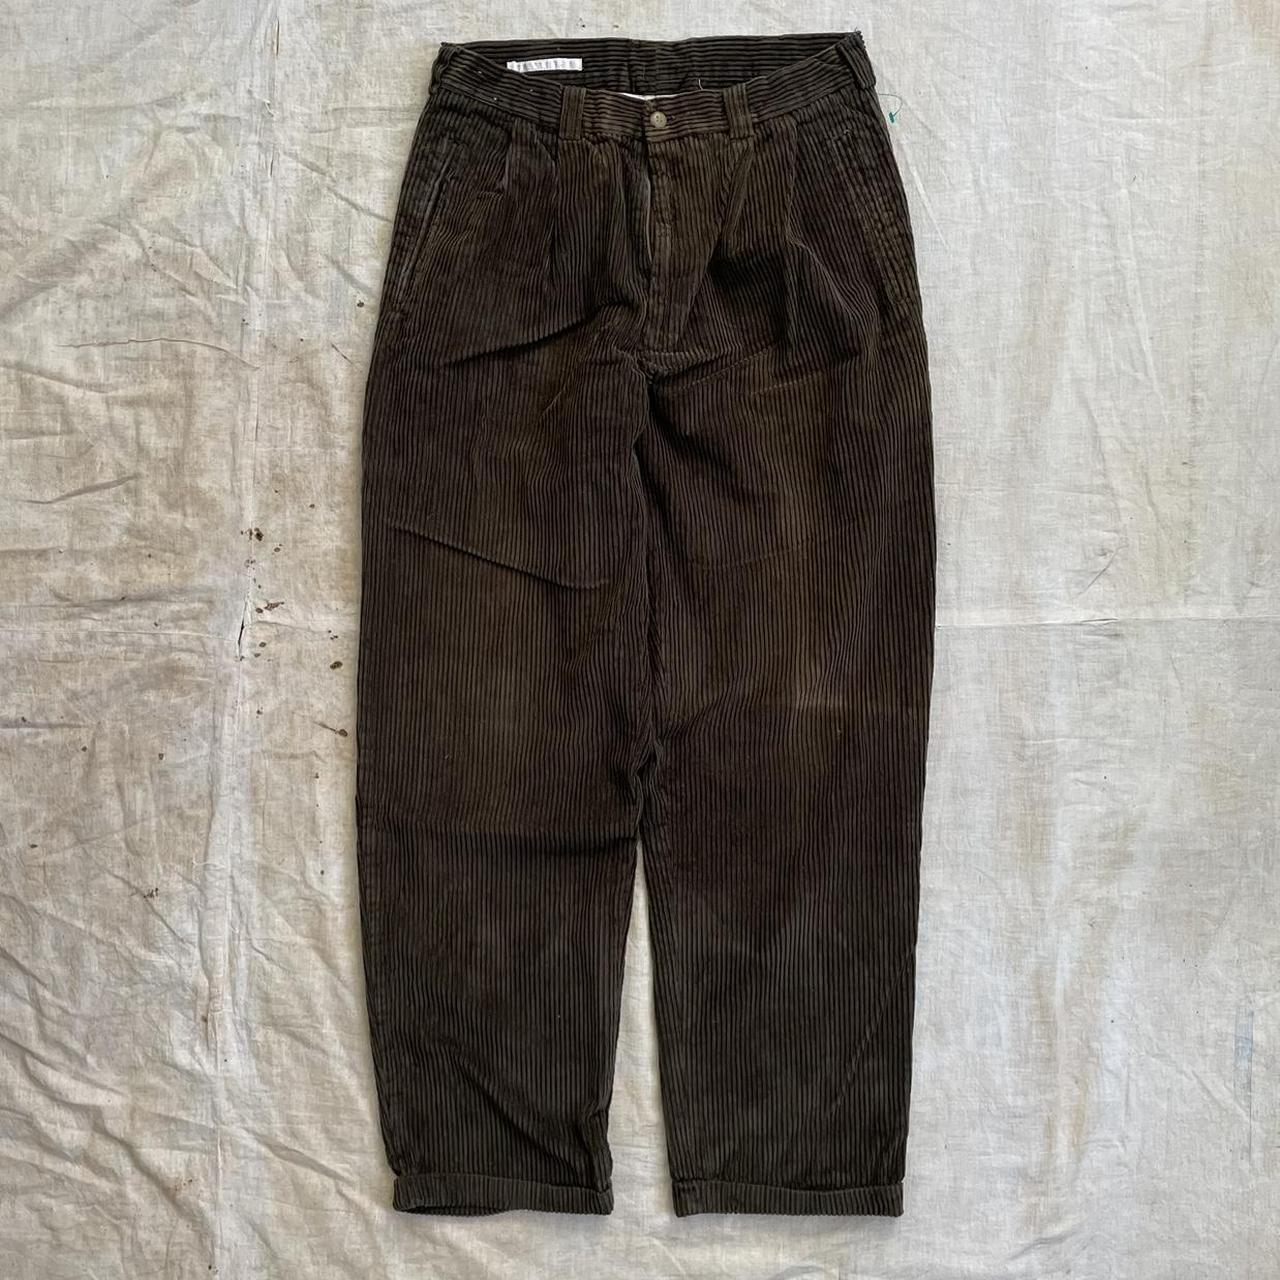 Vintage Baggy Corduroy Pants -Deep chocolate brown... - Depop